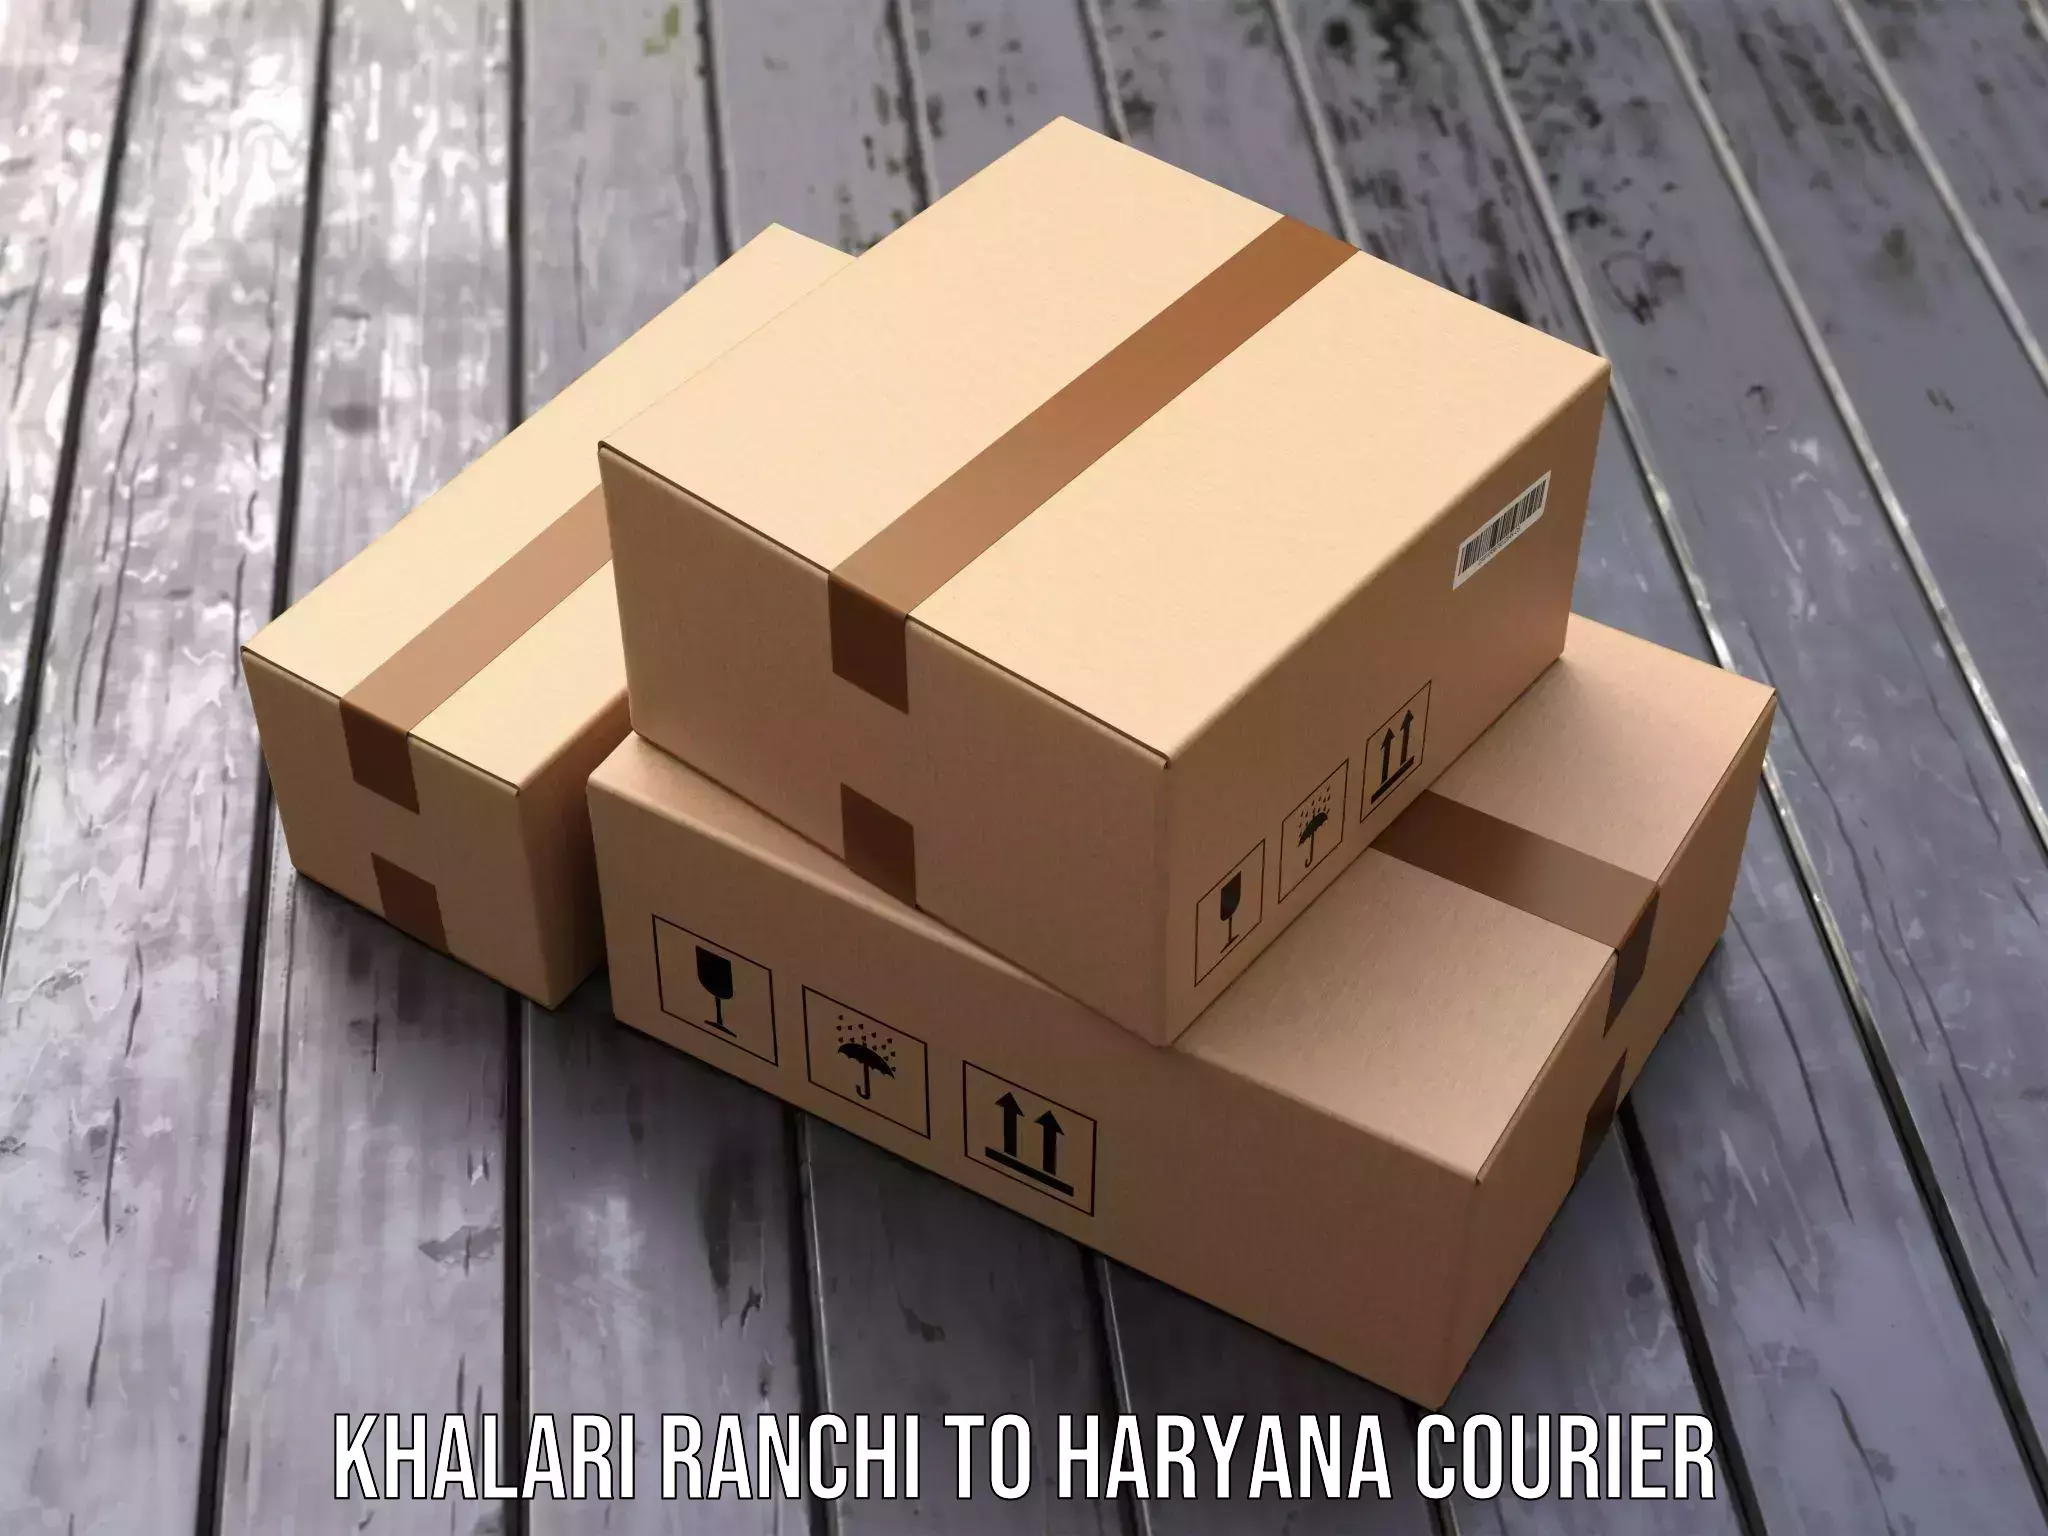 Customized delivery options Khalari Ranchi to Gurgaon